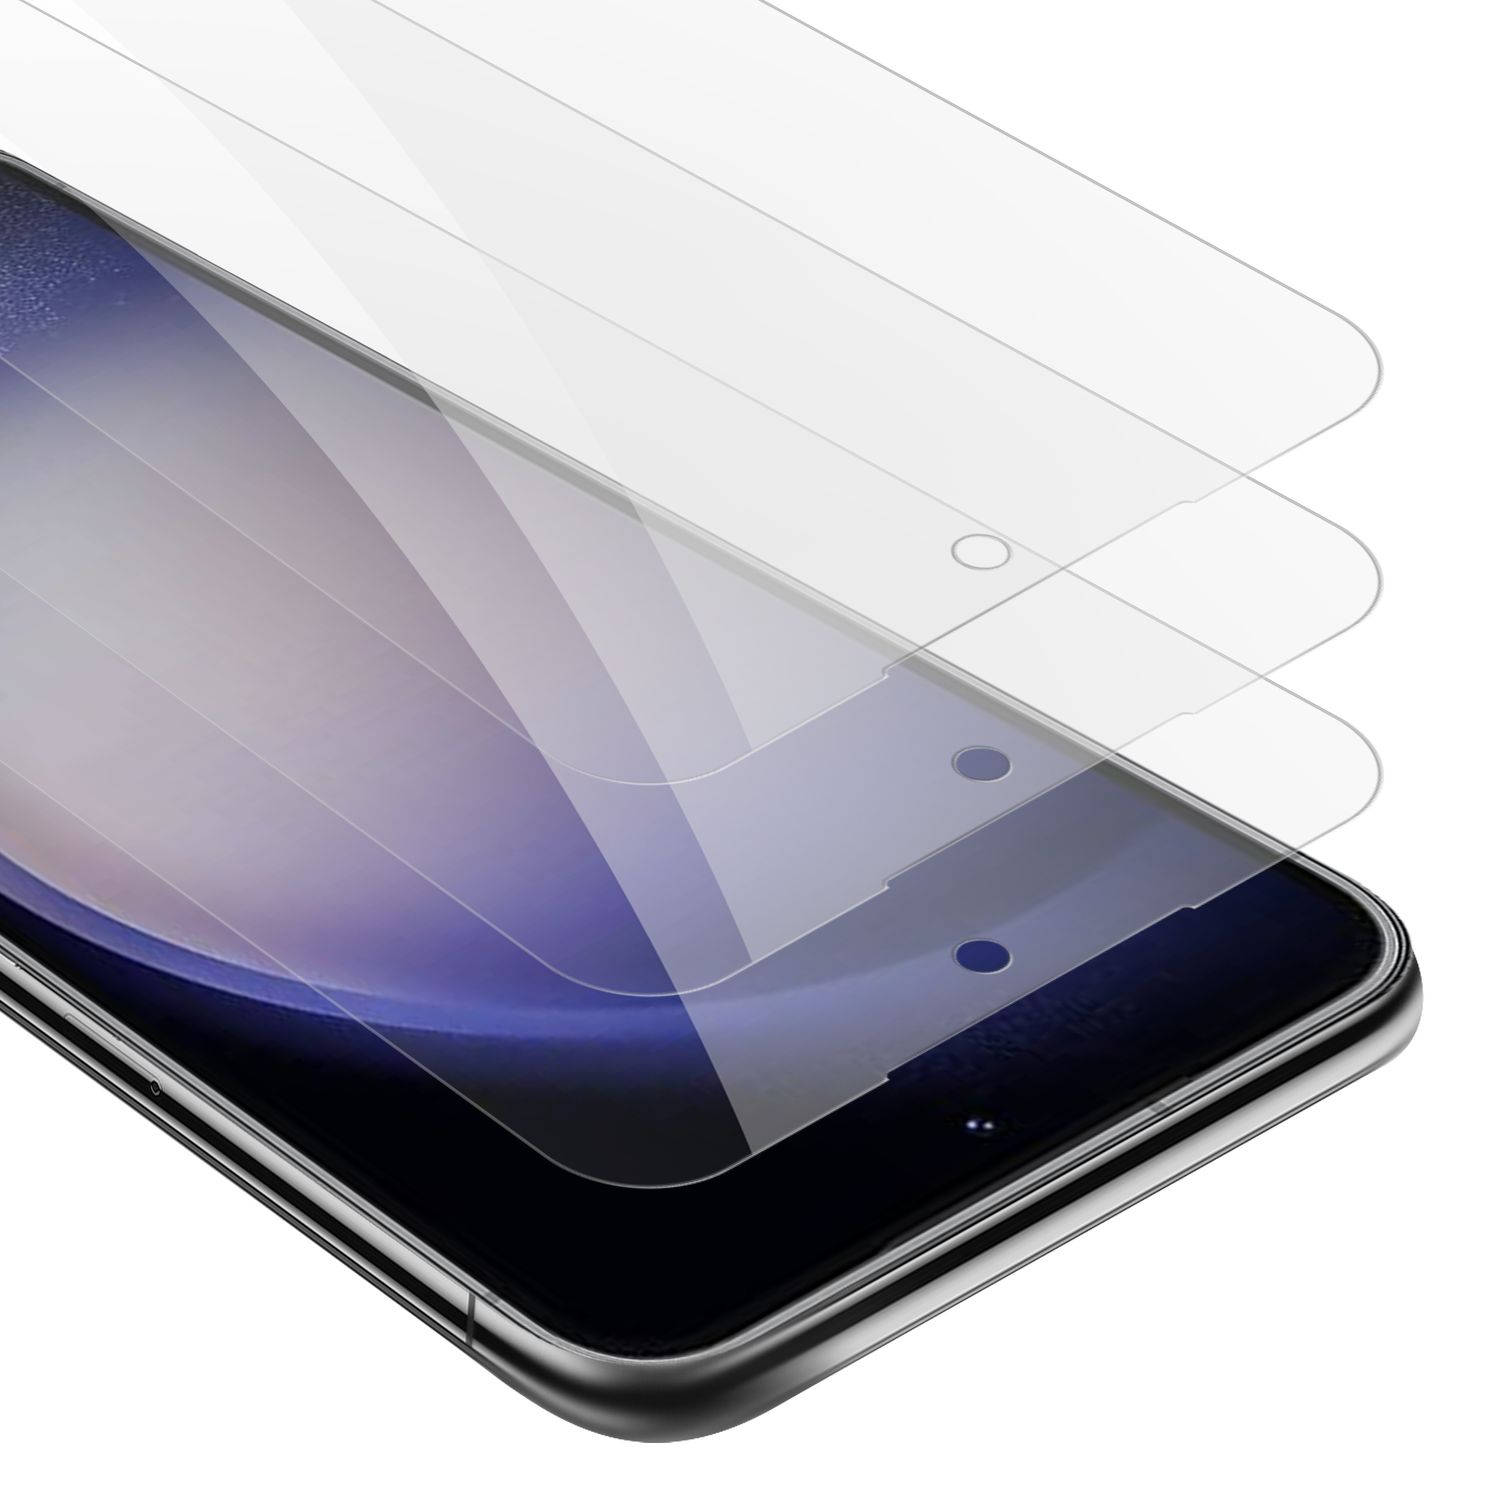 Cadorabo 3x Screenprotector voor Samsung Galaxy S23 - Beschermende Pantser Film in KRISTALHELDER - Getemperd (Tempered) Display beschermend glas in 9H hardheid met 3D Touch